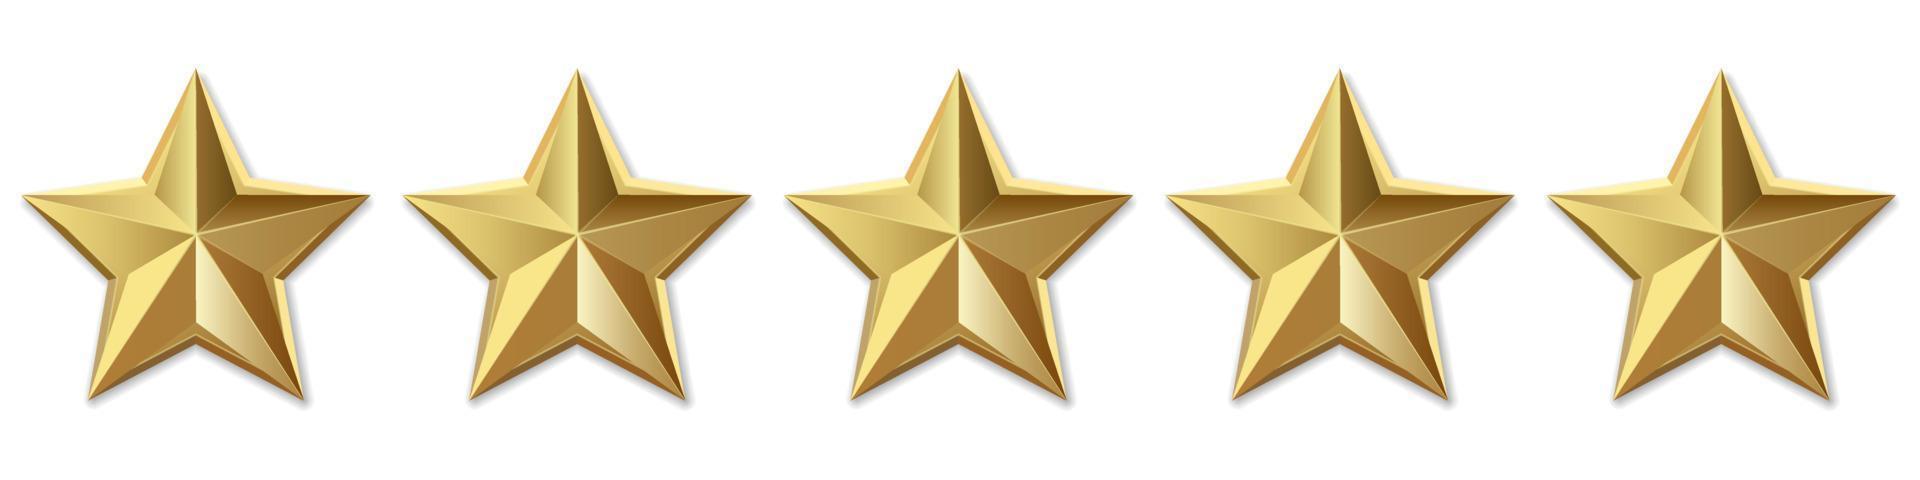 revisão de classificação de produto de cinco estrelas douradas para aplicativos e sites vetor